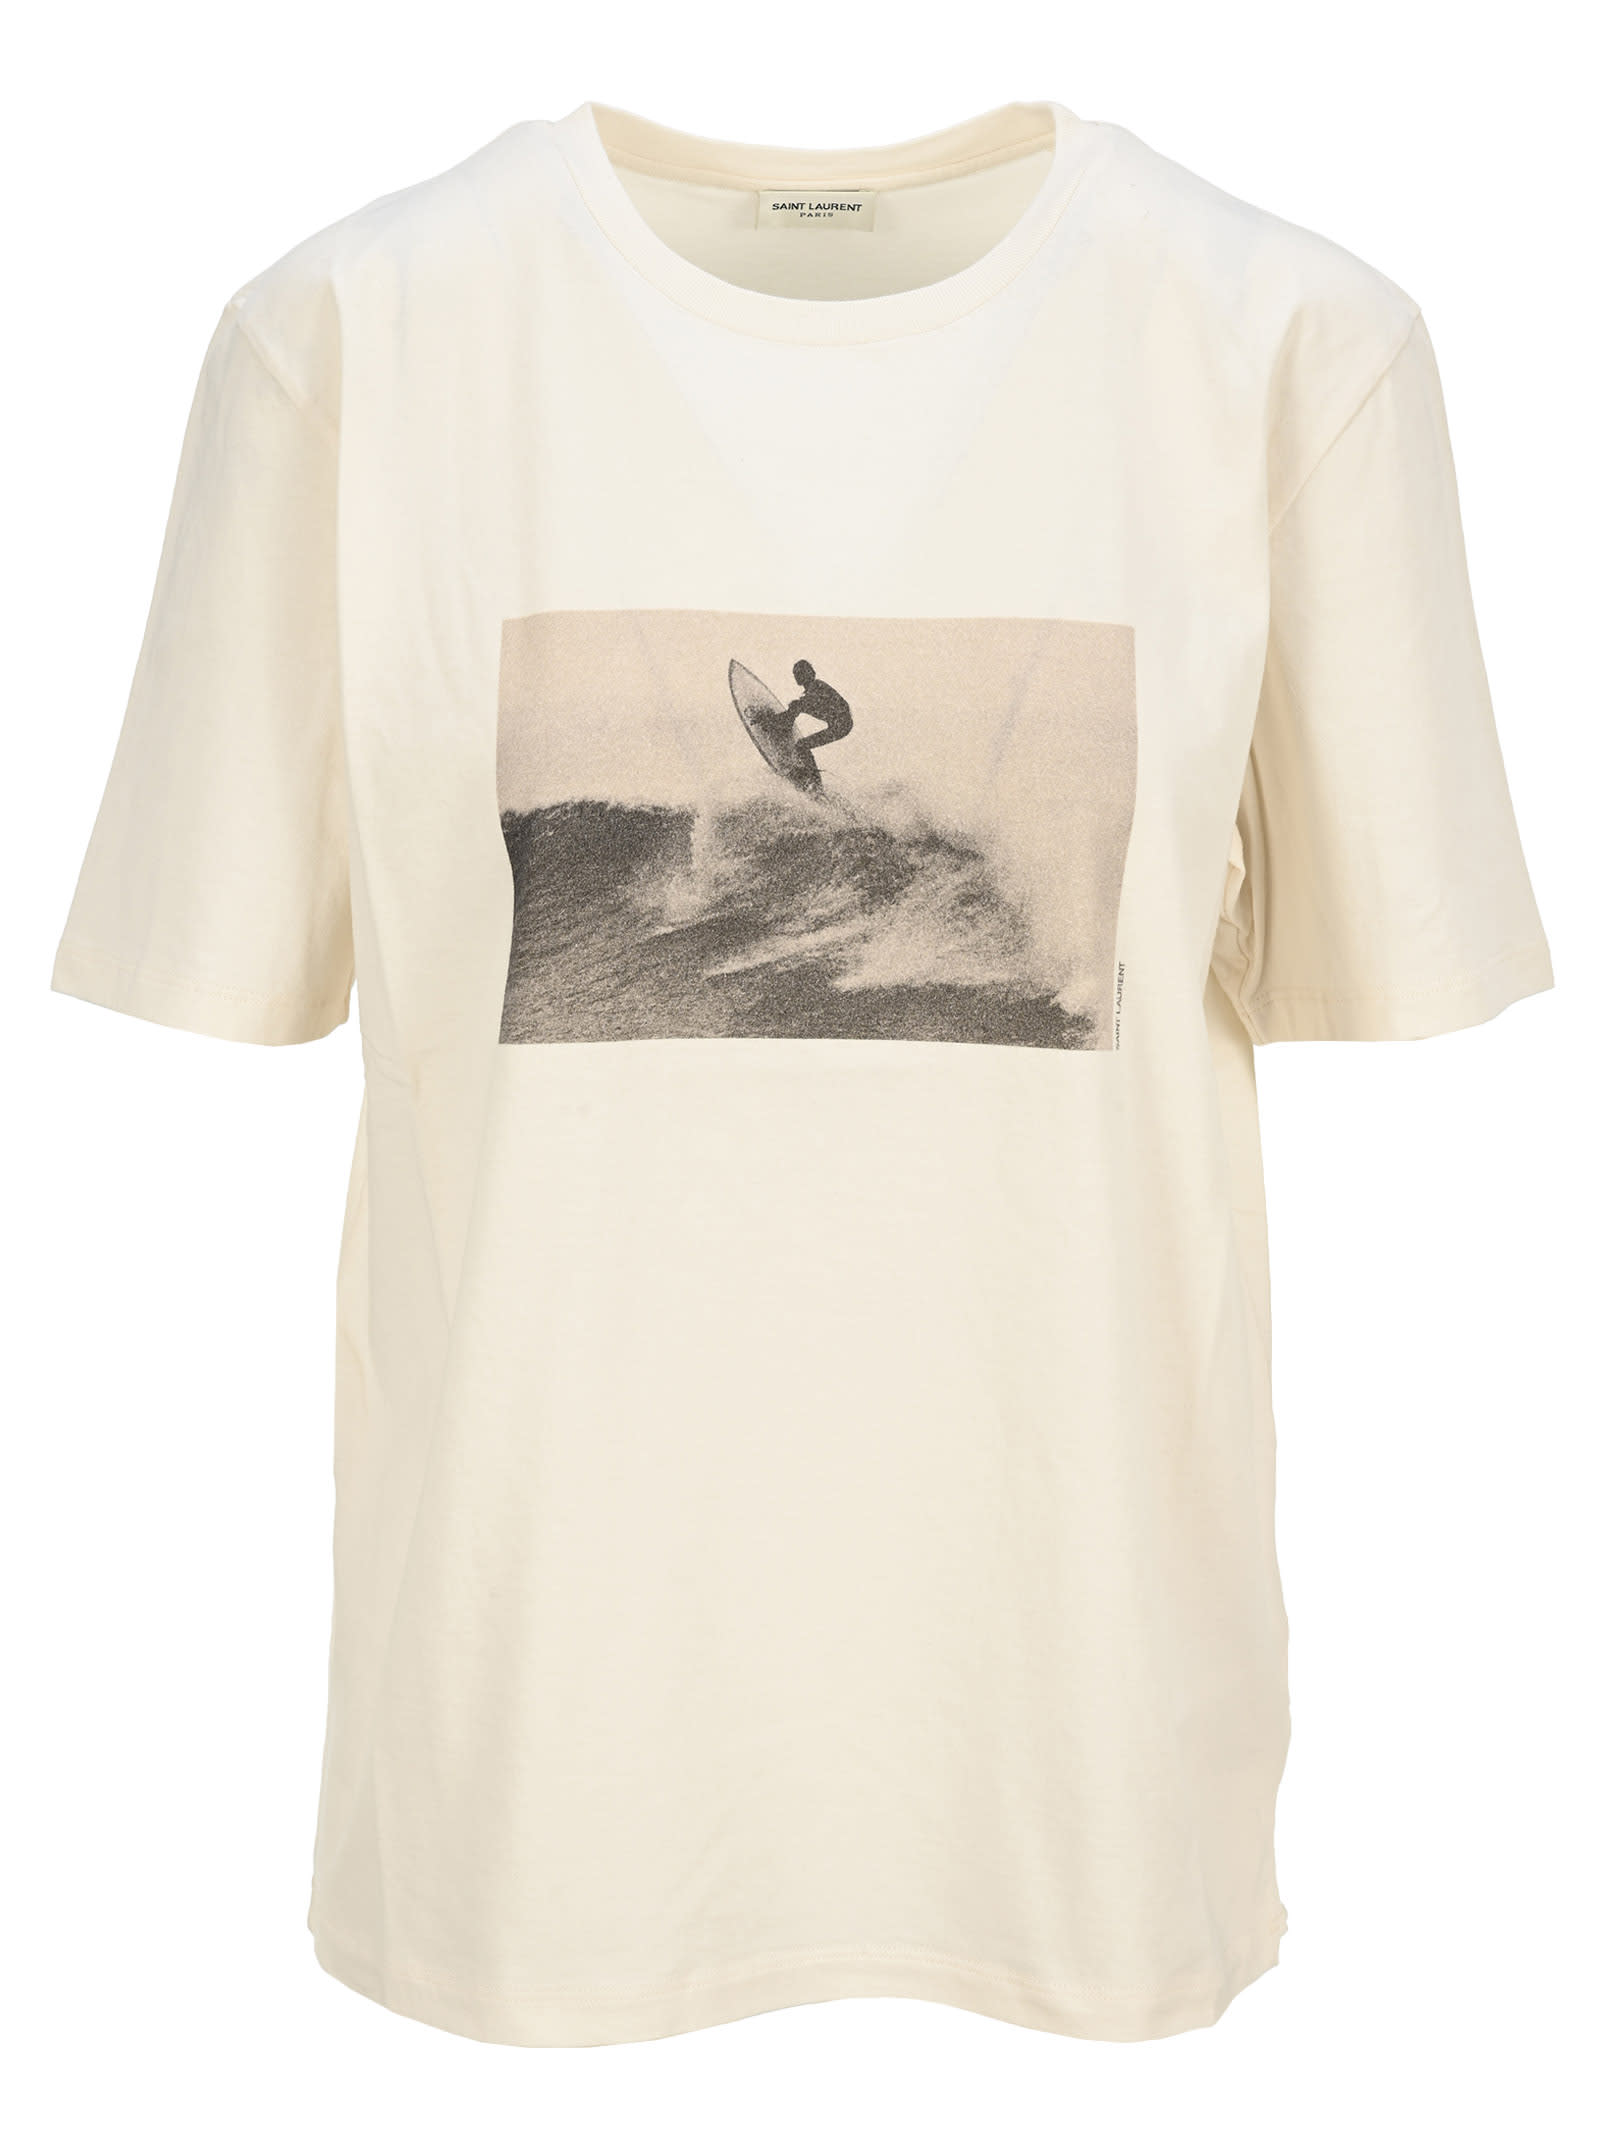 Saint Laurent Surfer Print T-shirt